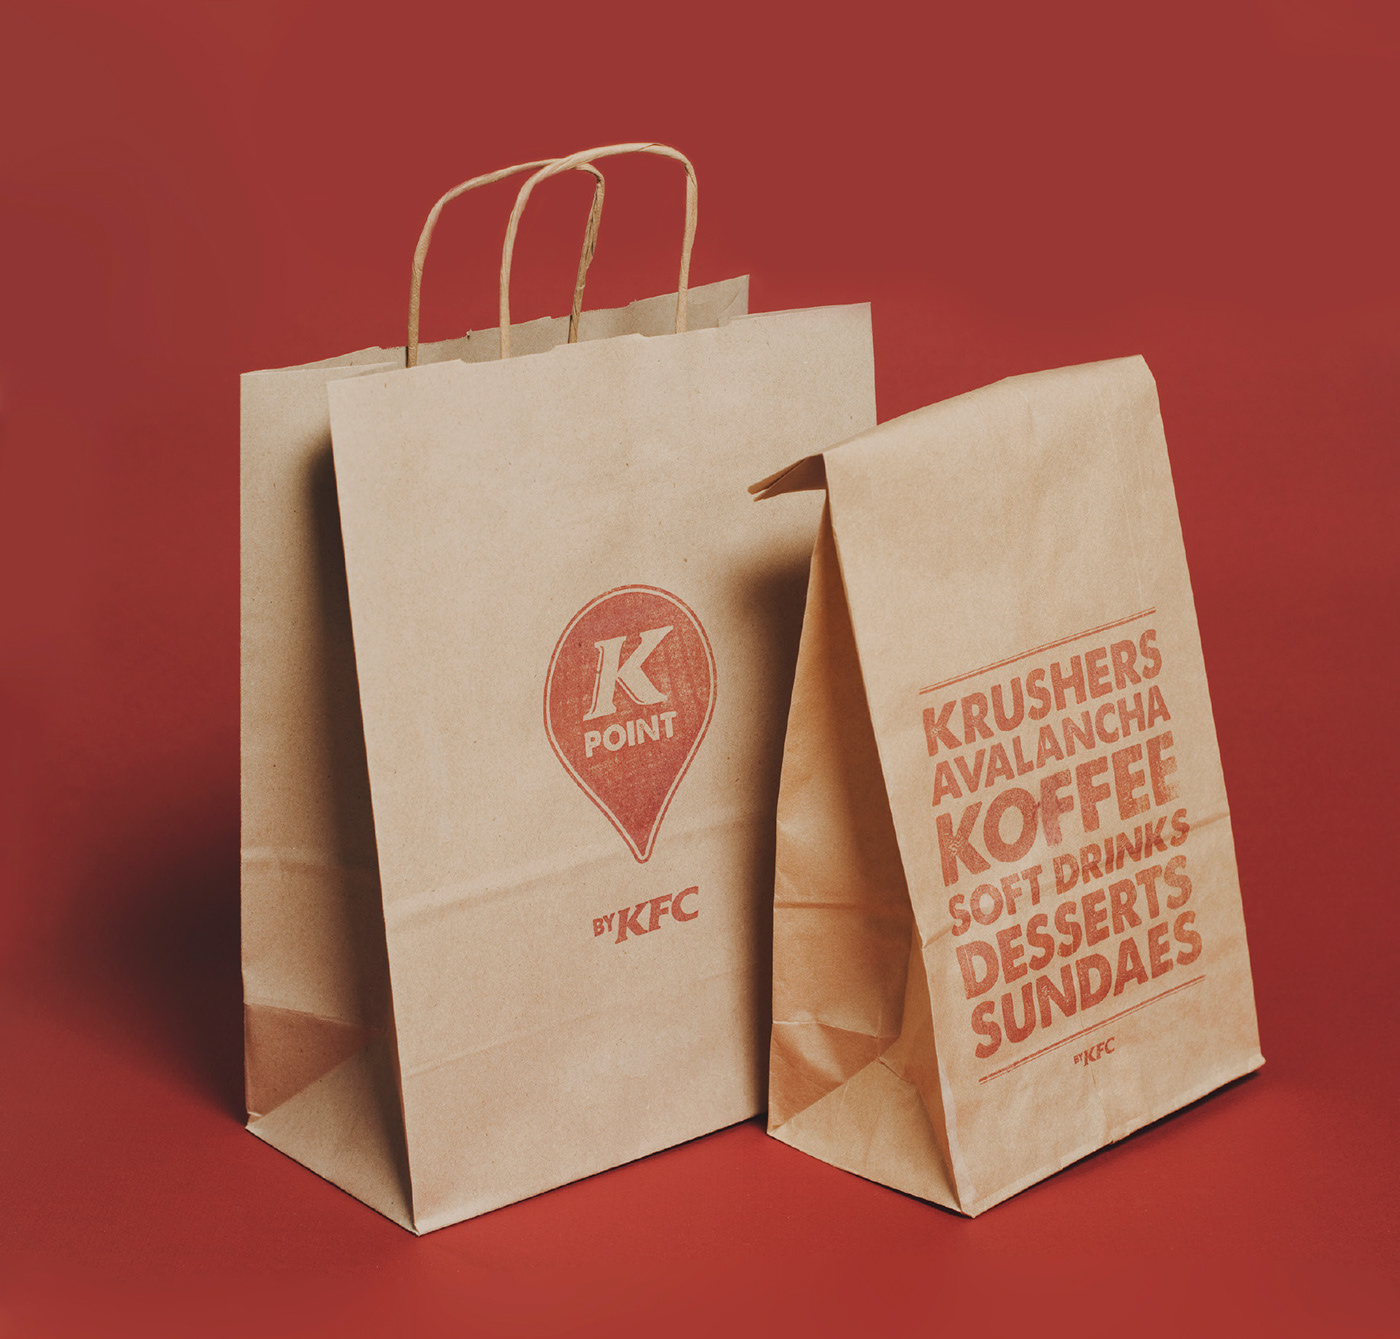 KFC k point coffe Food 